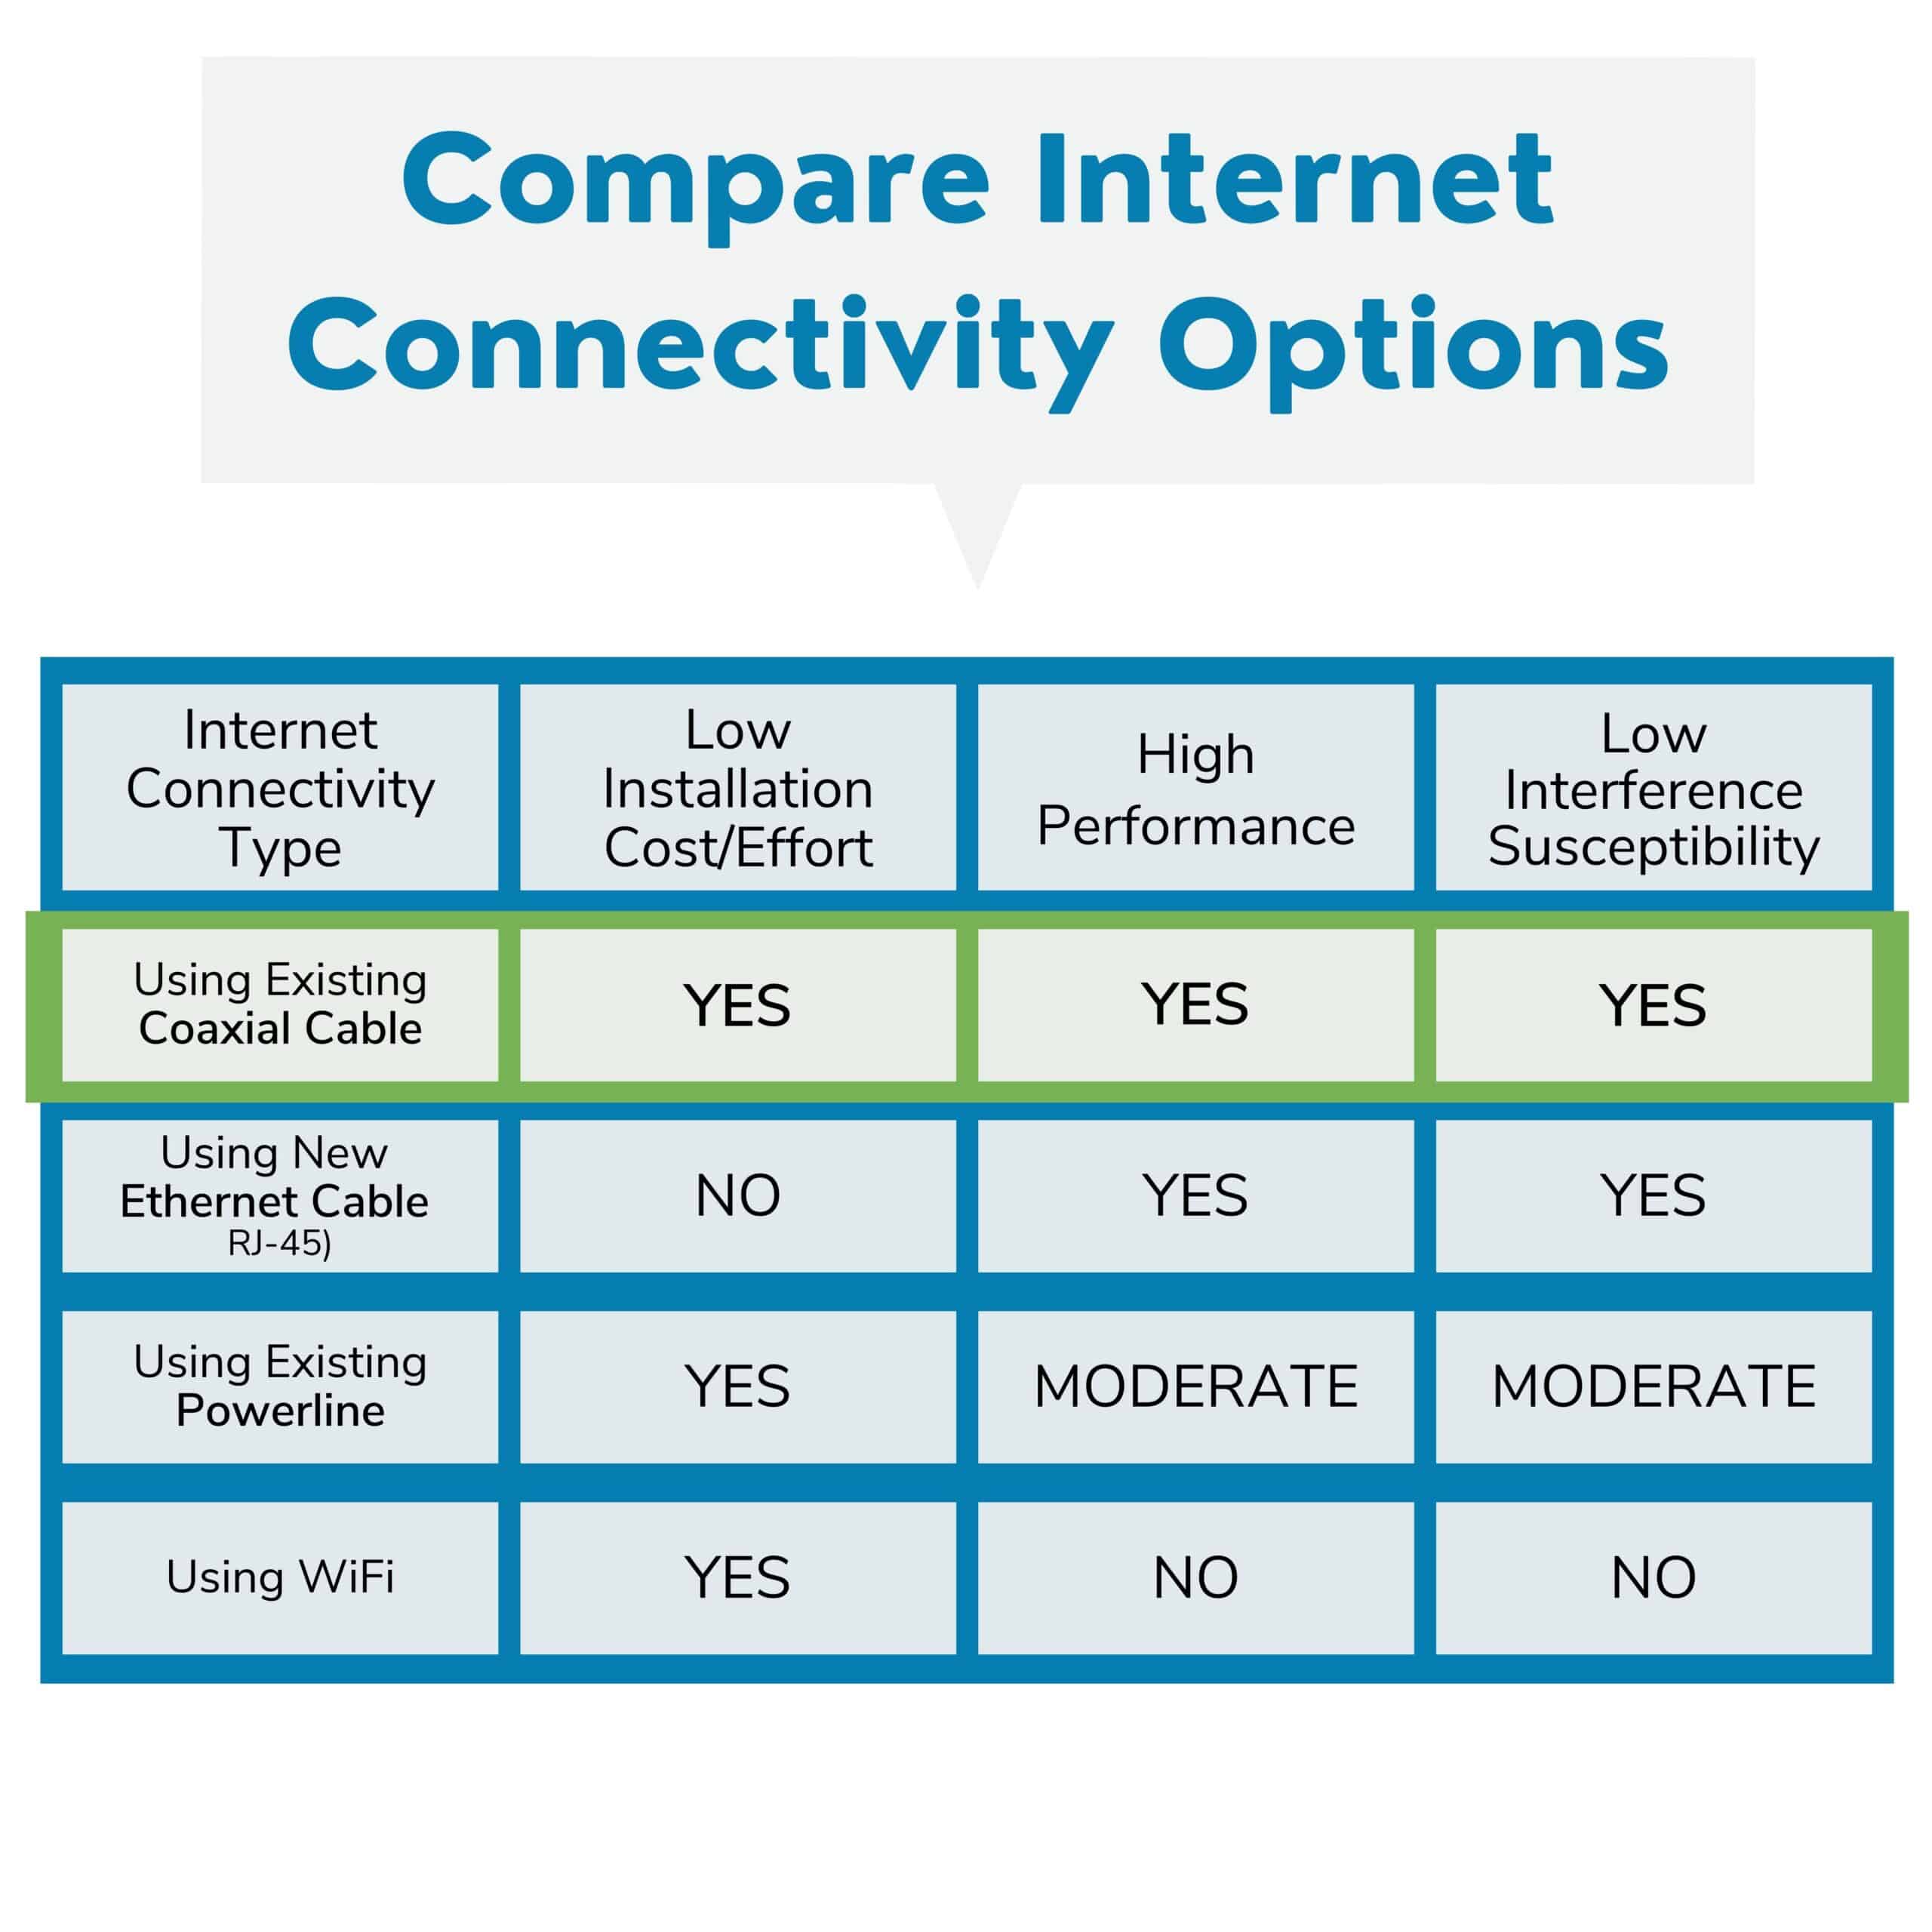 Compare Internet